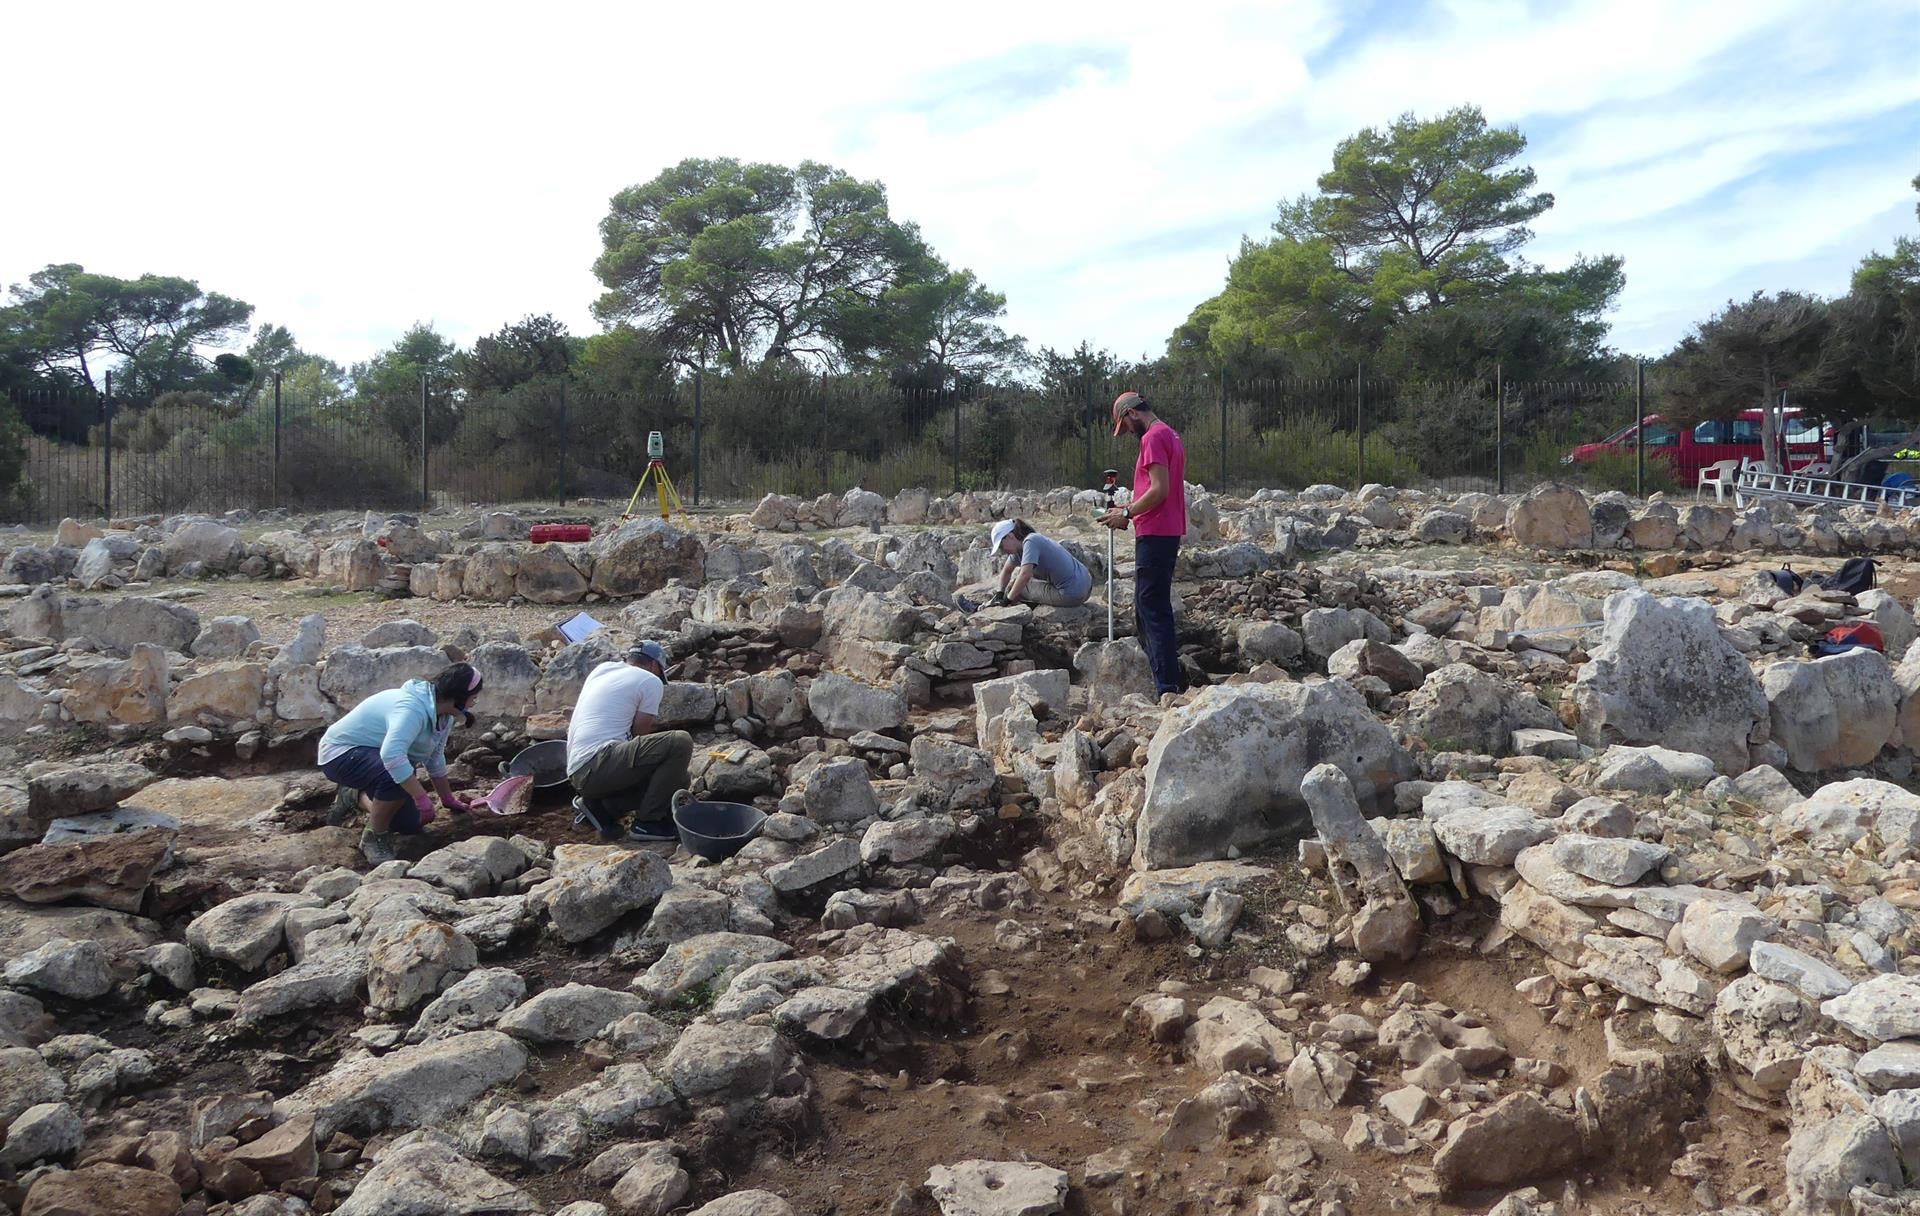 El Consell Superior d’Investigacions Científiques (CSIC) està duent a terme un estudi sobre les eines macrolítiques de tres jaciments prehistòrics de l’illa de Formentera, que pertanyen al període de l’Edat del Bronze. L’estudi s’emmarca en el projecte ArqueoBarbaria, finançat pel Consell de Formentera i l’Agència Estatal d’Investigació, i forma part de la línia de recerca ‘Prehistòria recent del Mediterrani Occidental’, desenvolupada a les Balears, Còrsega i Sardenya pel investigador Pau Sureda, de l’Institut de Ciències del Patrimoni del CSIC. Segons ha informat el CSIC en un comunicat, l’estudi ha permès aprofundir en qüestions relacionades amb el procés de producció, la tecnologia i l’ús de les eines macrolítiques dels jaciments de Ca na Costa, Cap de Barbaria II i Sa Cala, combinant mètodes d’estudi funcional i microanàlisi. Les eines macrolítiques són objectes de pedra de grans dimensions, com ara molins, polidores, percutors o maces, que s’utilitzaven per a diferents activitats, com ara la mòlta de cereals, la poliment d’objectes o la mineria. El investigador Pau Sureda ha assenyalat que “Formentera va ser una de les últimes illes del Mediterrani en ser colonitzada per l’home a finals del tercer mil·lenni a.C.”. A més, ha recordat que “típica d’un entorn semiàrid, l’Illa és petita i pobra en recursos i biodiversitat”. Sureda ha explicat que aquest estudi ha mostrat tecnologies similars, seguint patrons tipològics i funcionals semblants als de la resta de Balears. Aquesta tecnologia comuna es reflecteix en la forma en què es van adquirir les matèries primeres, així com en la fabricació, les estratègies de manteniment i l’ús de les eines macrolítiques. També ha assenyalat que les anàlisis integrades de fitòlits i midó dels kits d’eines de mòlta mostren evidències de l’explotació d’espècies de la família del mill durant l’Edat del Bronze, cereals que estan ben adaptats a sòls pobres en nutrients. “La producció i l’ús d’aquesta tecnologia pètria suggereixen com les primeres comunitats humanes de l’illa van aconseguir i van compartir coneixement social sobre el paisatge insular i les seves limitacions ambientals”, ha afegit. Per últim, Sureda ha indicat que aquesta investigació arqueològica integradora a Formentera “ha mostrat el desenvolupament d’un conjunt d’estratègies innovadores, diversificades i intensives d’explotació de recursos, subratllant l’alta adaptabilitat i resiliència de les societats prehistòriques, així com l’intercanvi de tecnologia dins de l’arxipèlag balear i la seva evolució independent de les tecnologies continentals”.